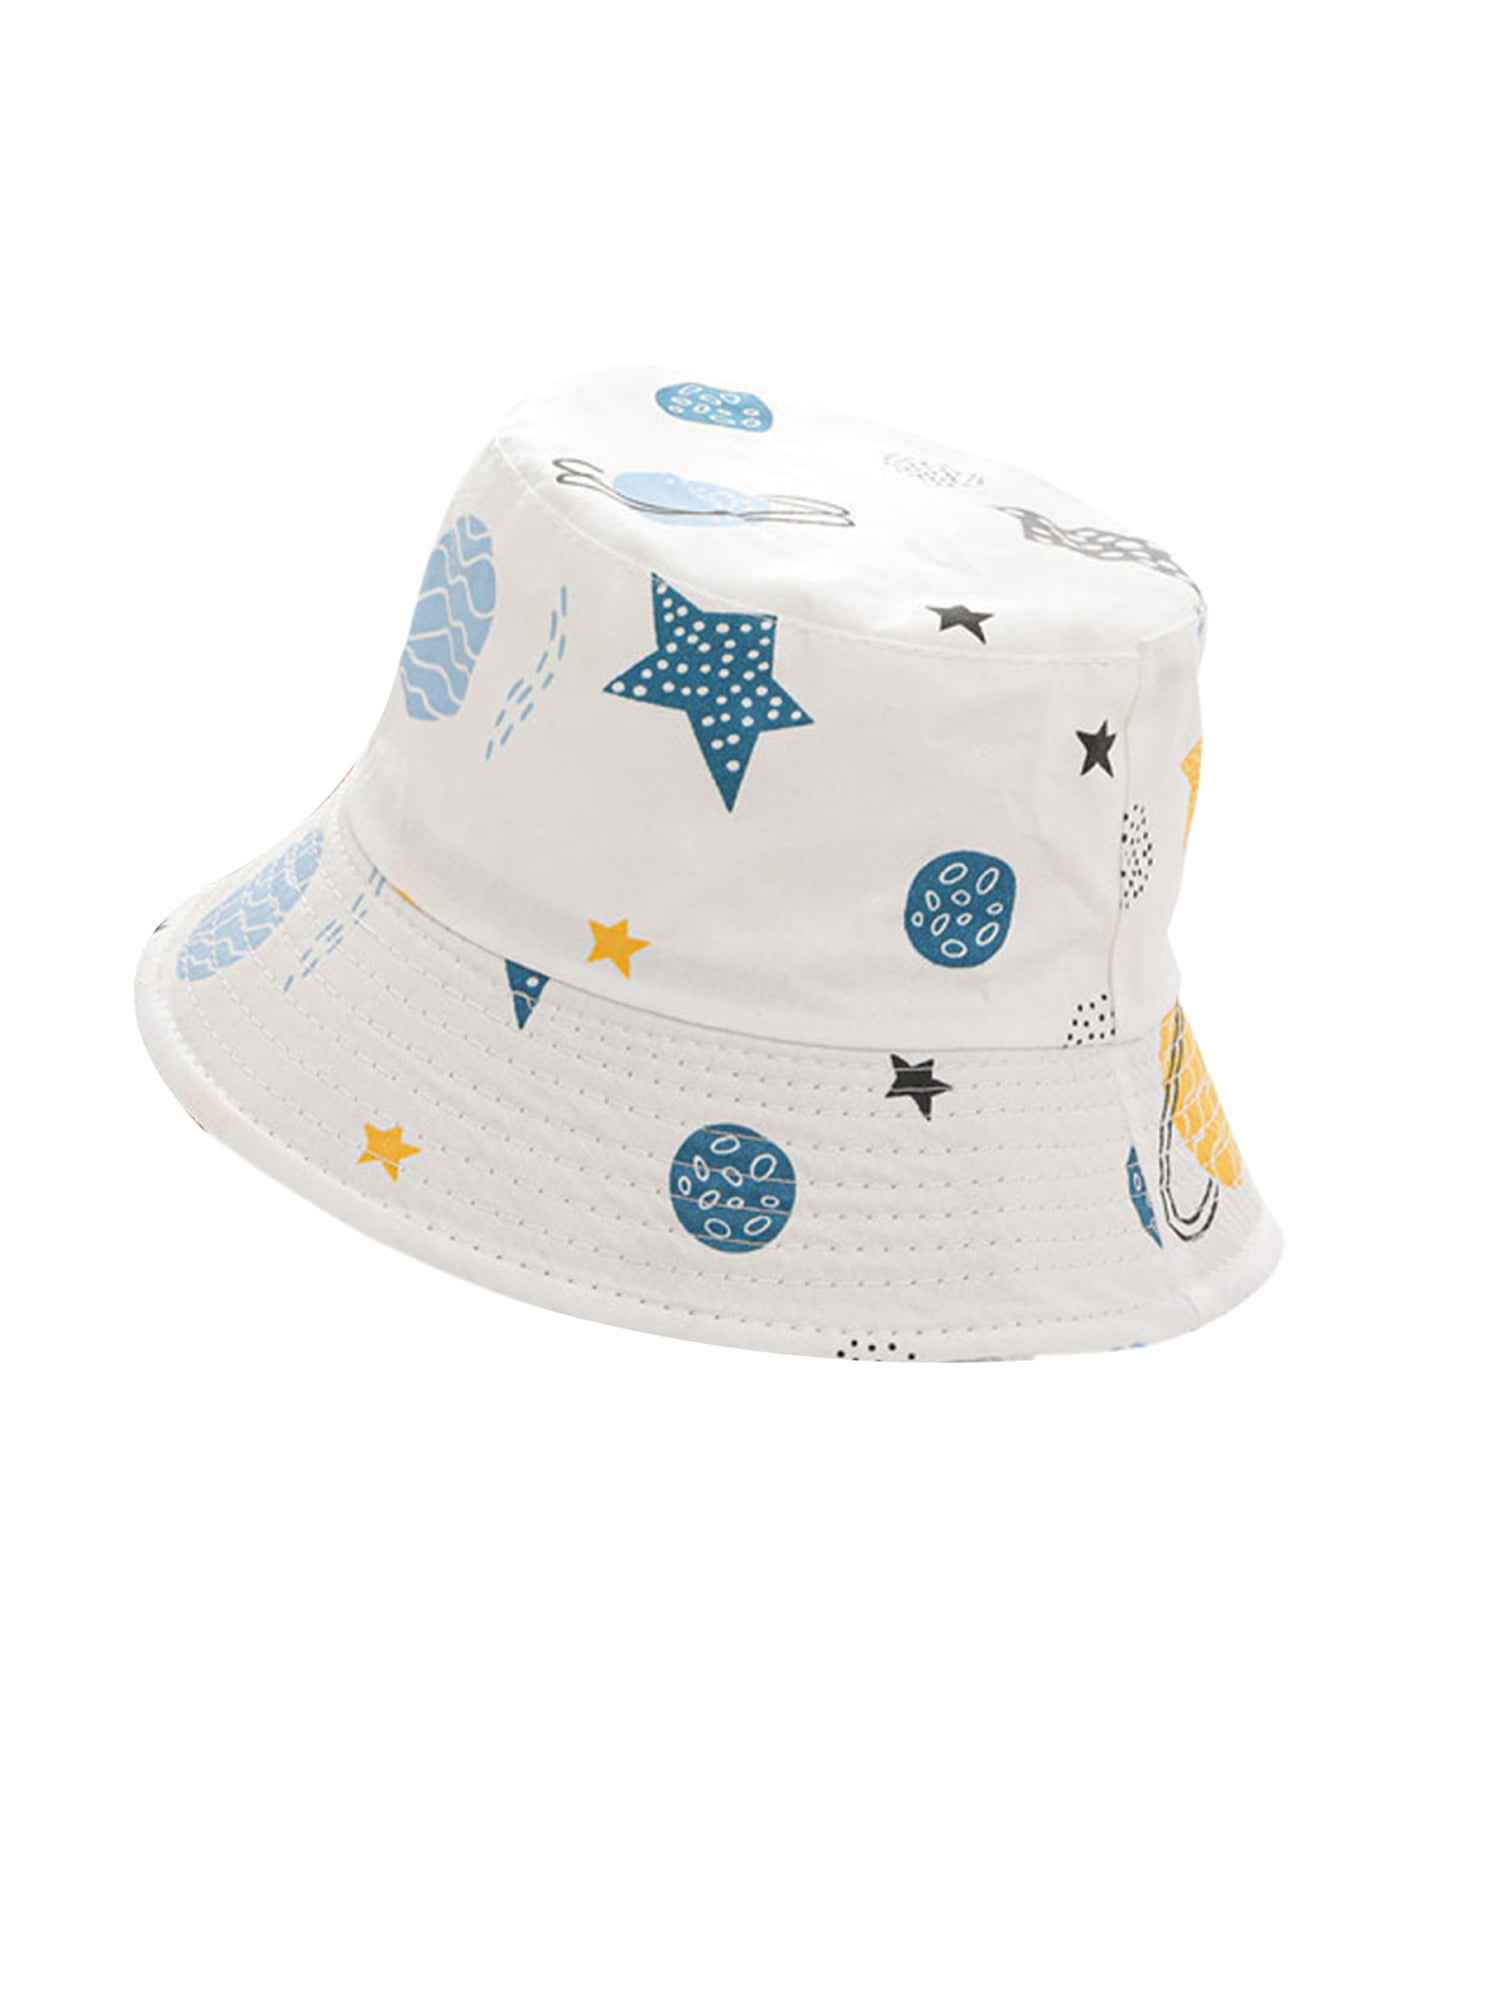 2 Pack Kids Bucket Hat Fisher Hats Summer Boys Girls Outdoor Sun Beach Cap 0-6T 